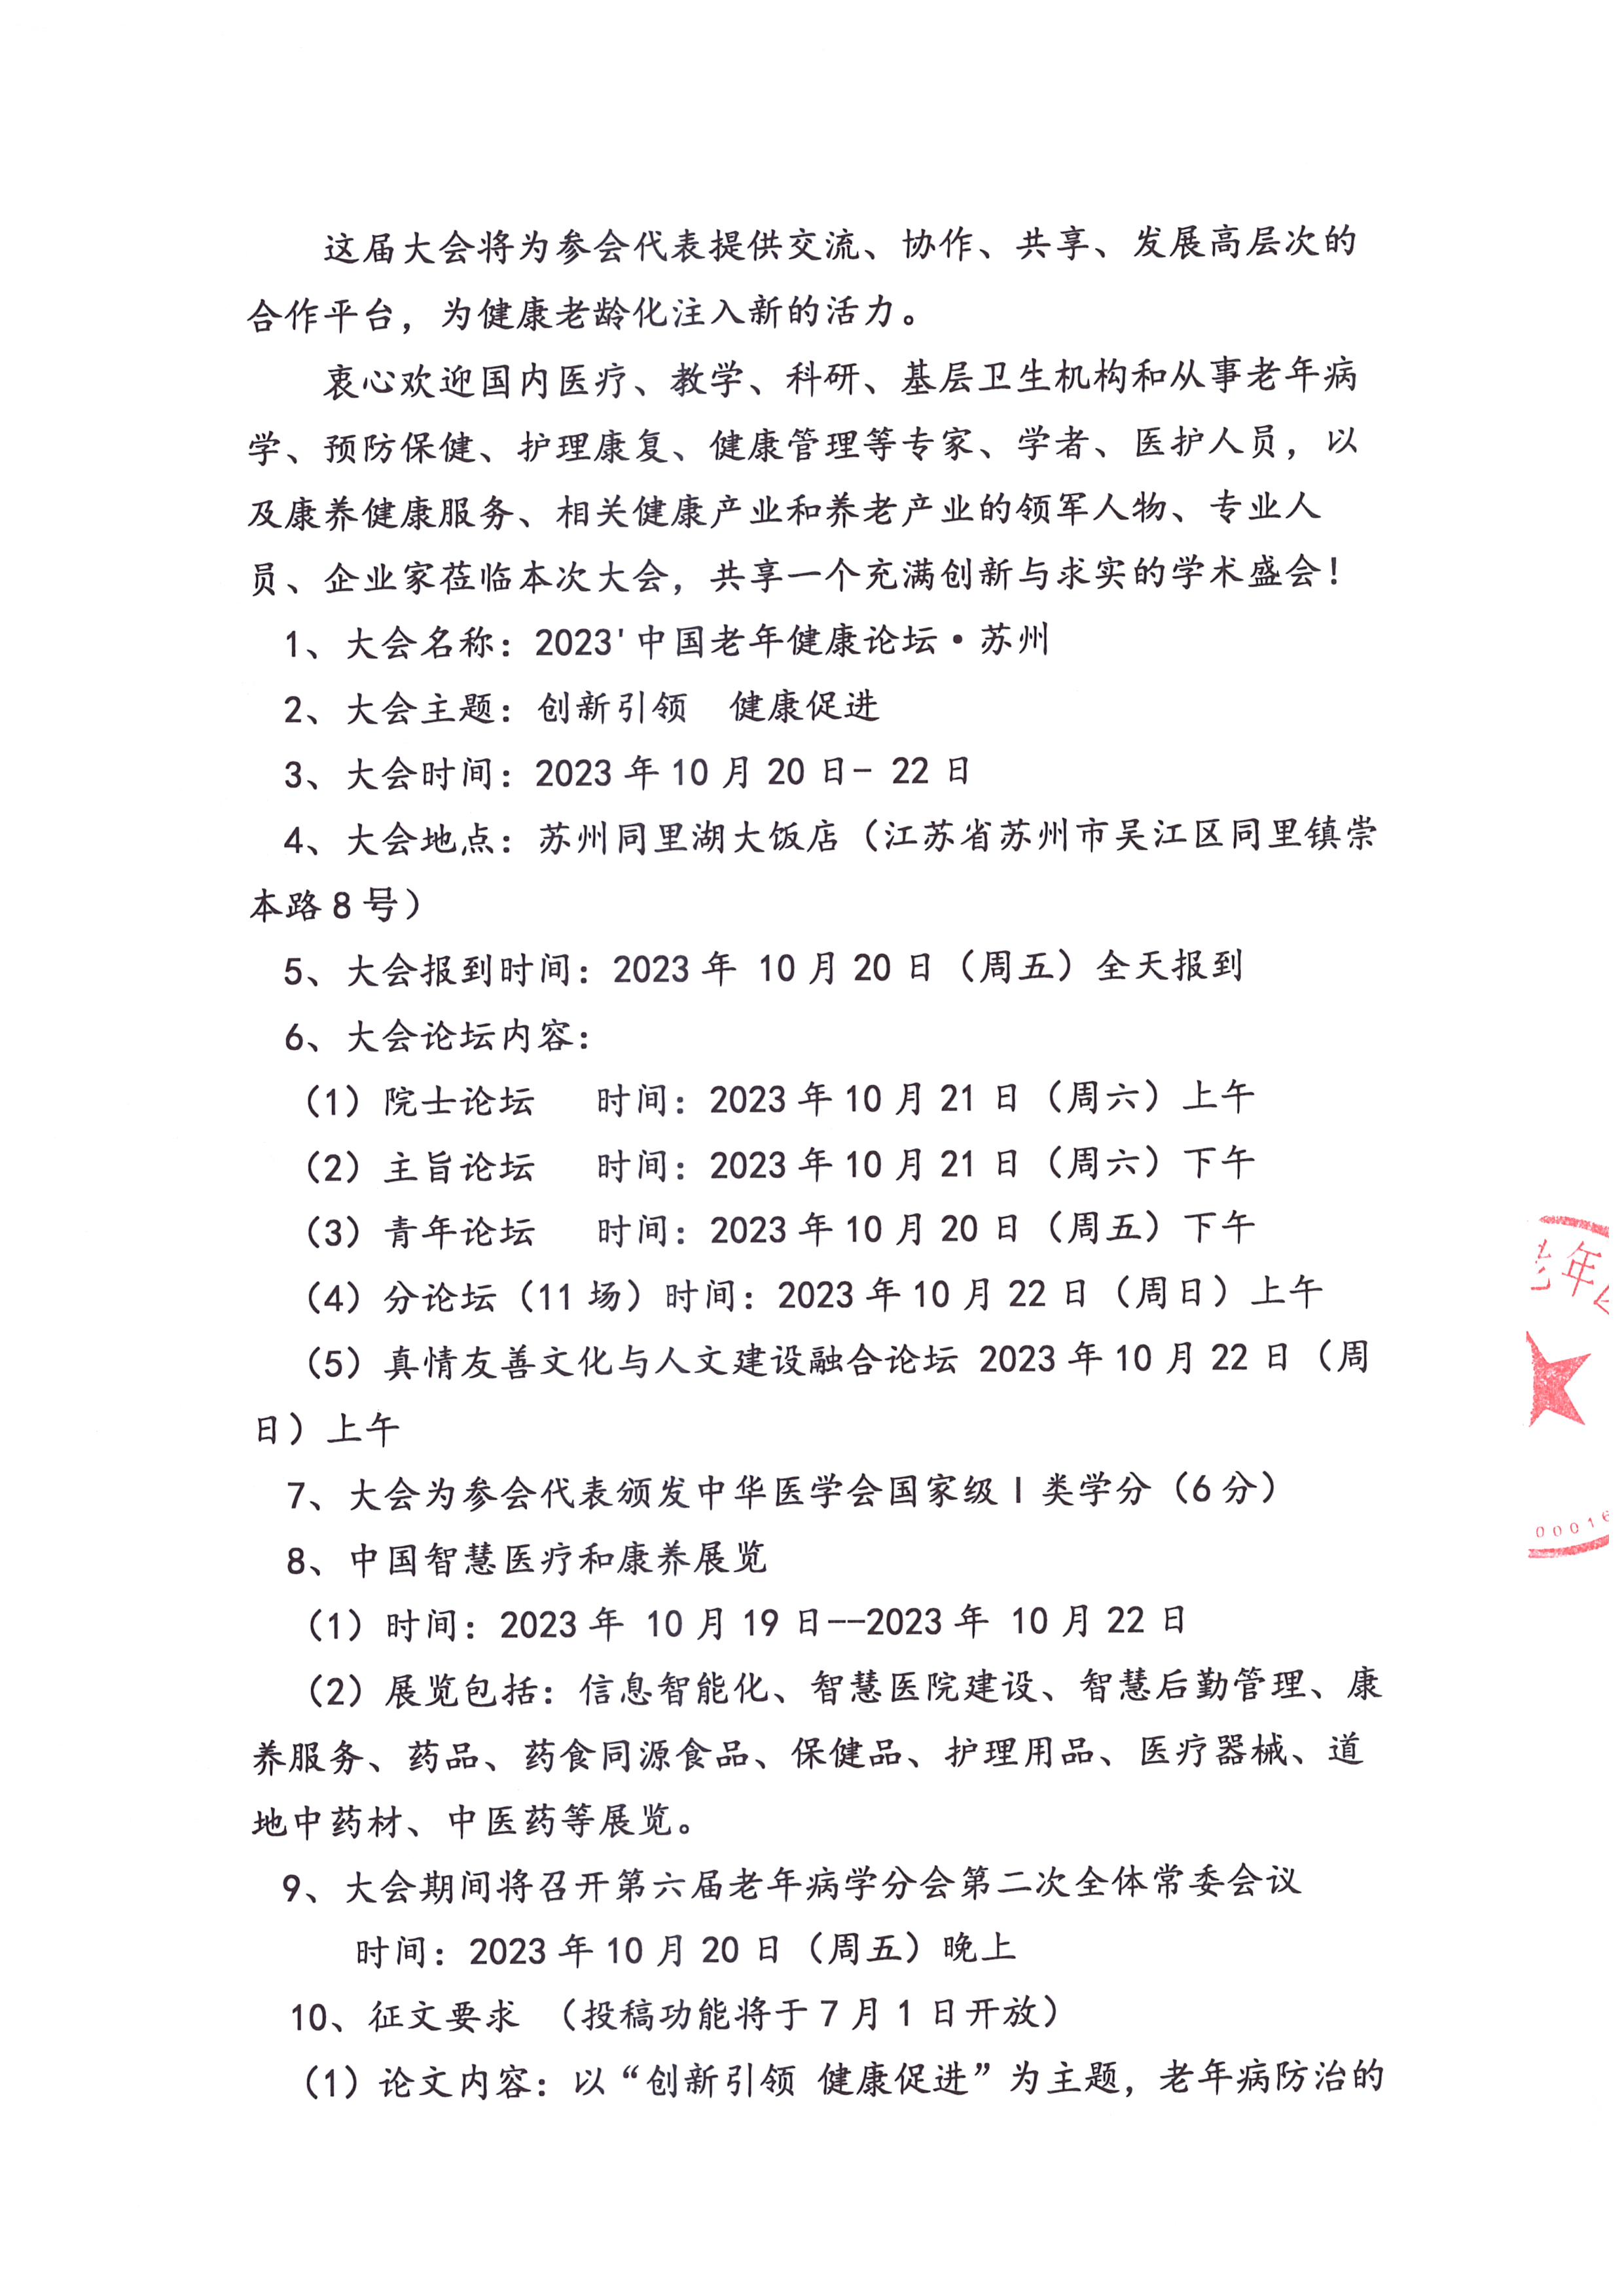 中国老年健康论坛•.苏州  第一轮通知_页面_2.jpg